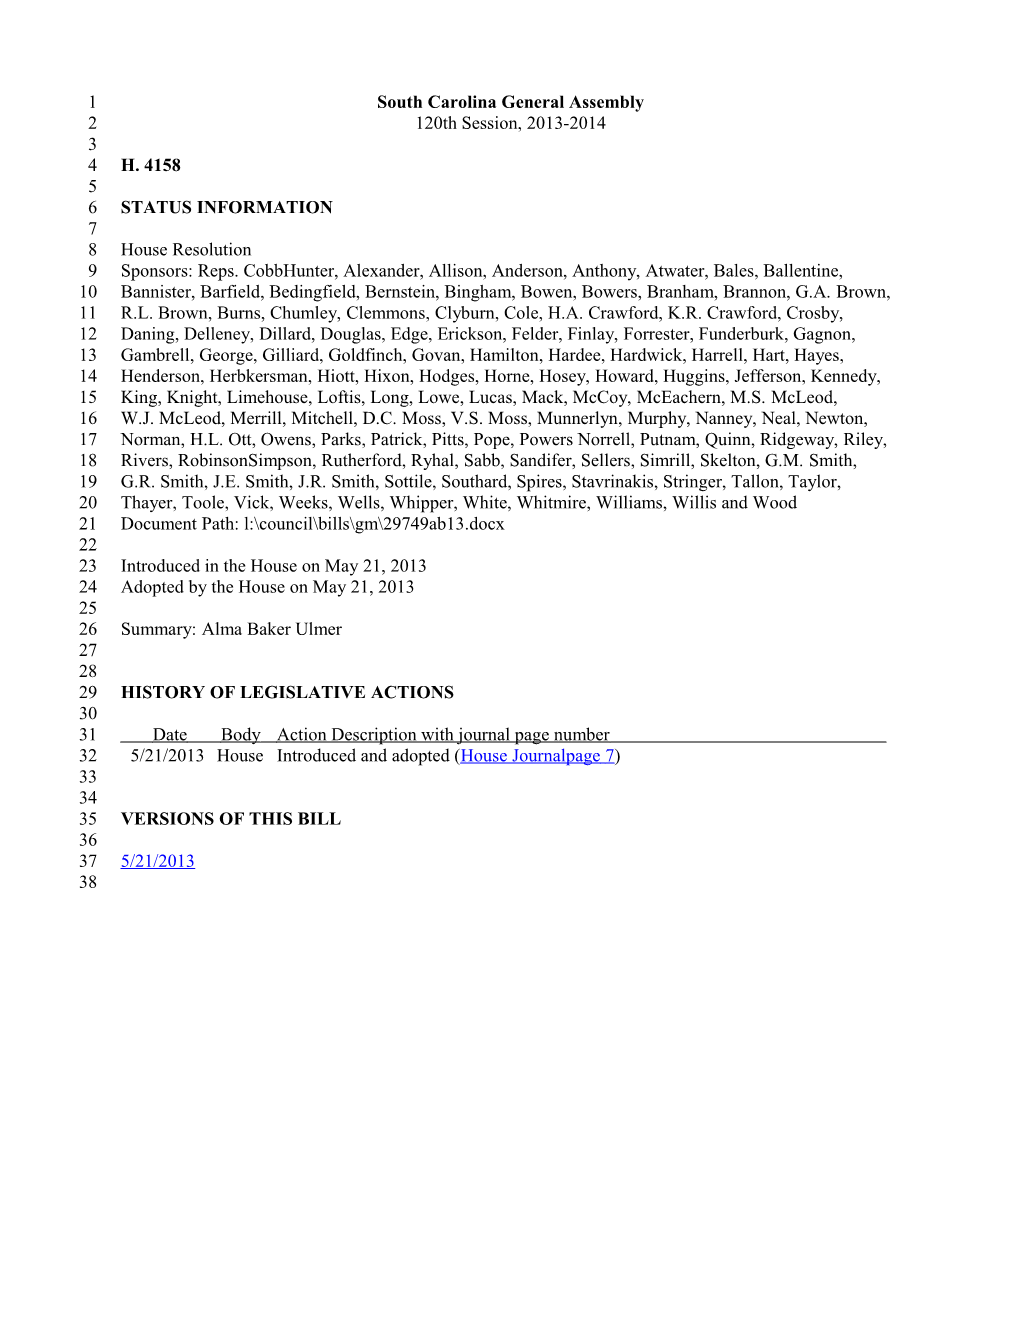 2013-2014 Bill 4158: Alma Baker Ulmer - South Carolina Legislature Online